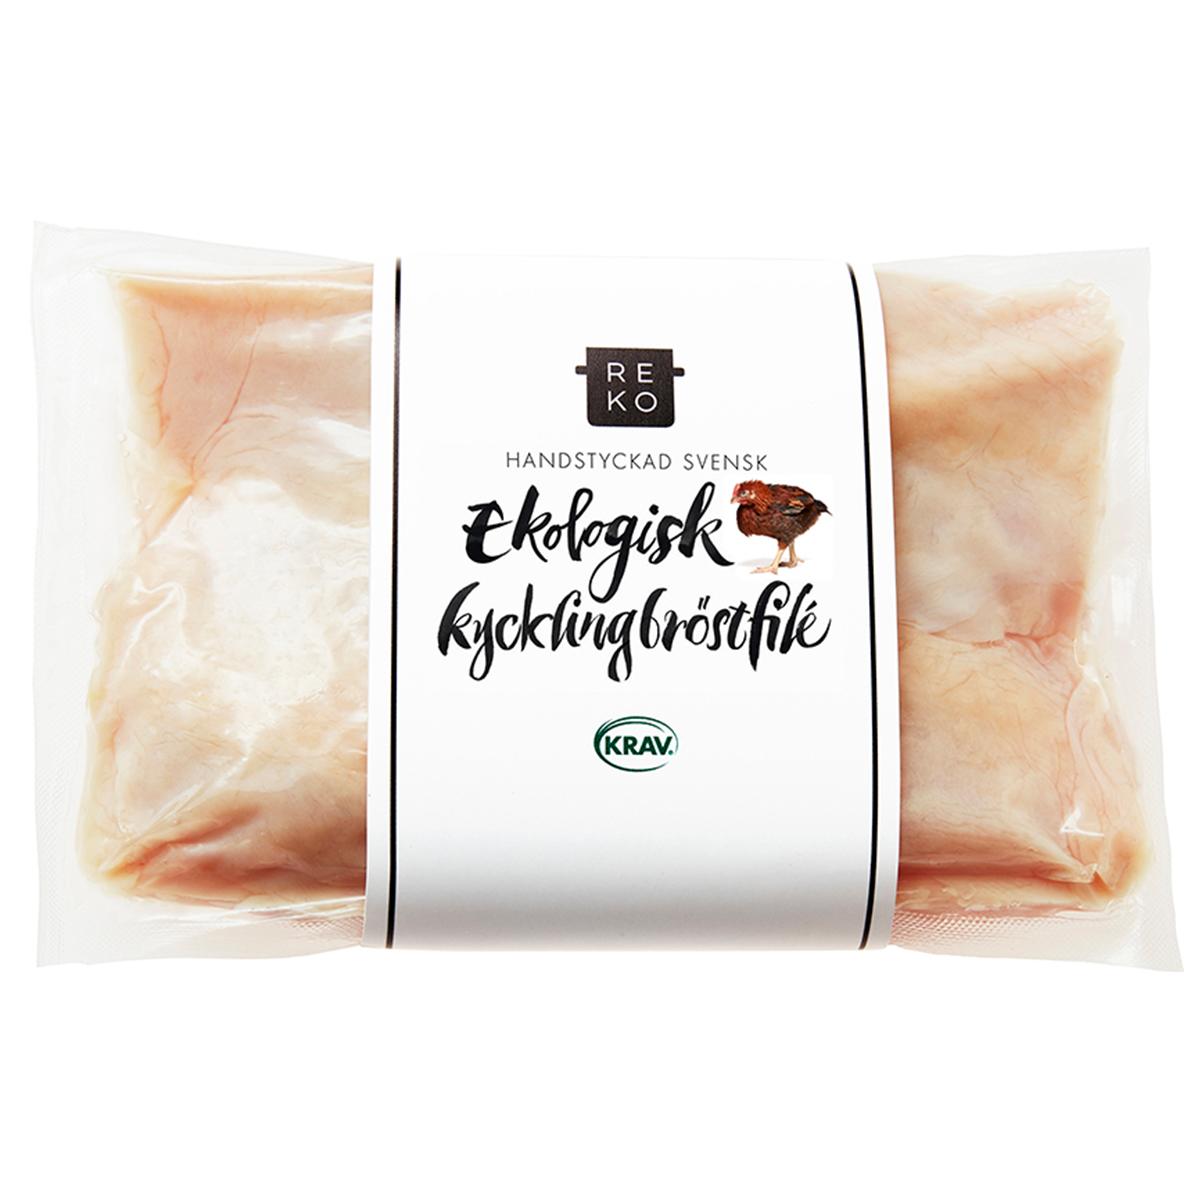 Reko Gårdar's Kycklingbröstfilé KRAV'